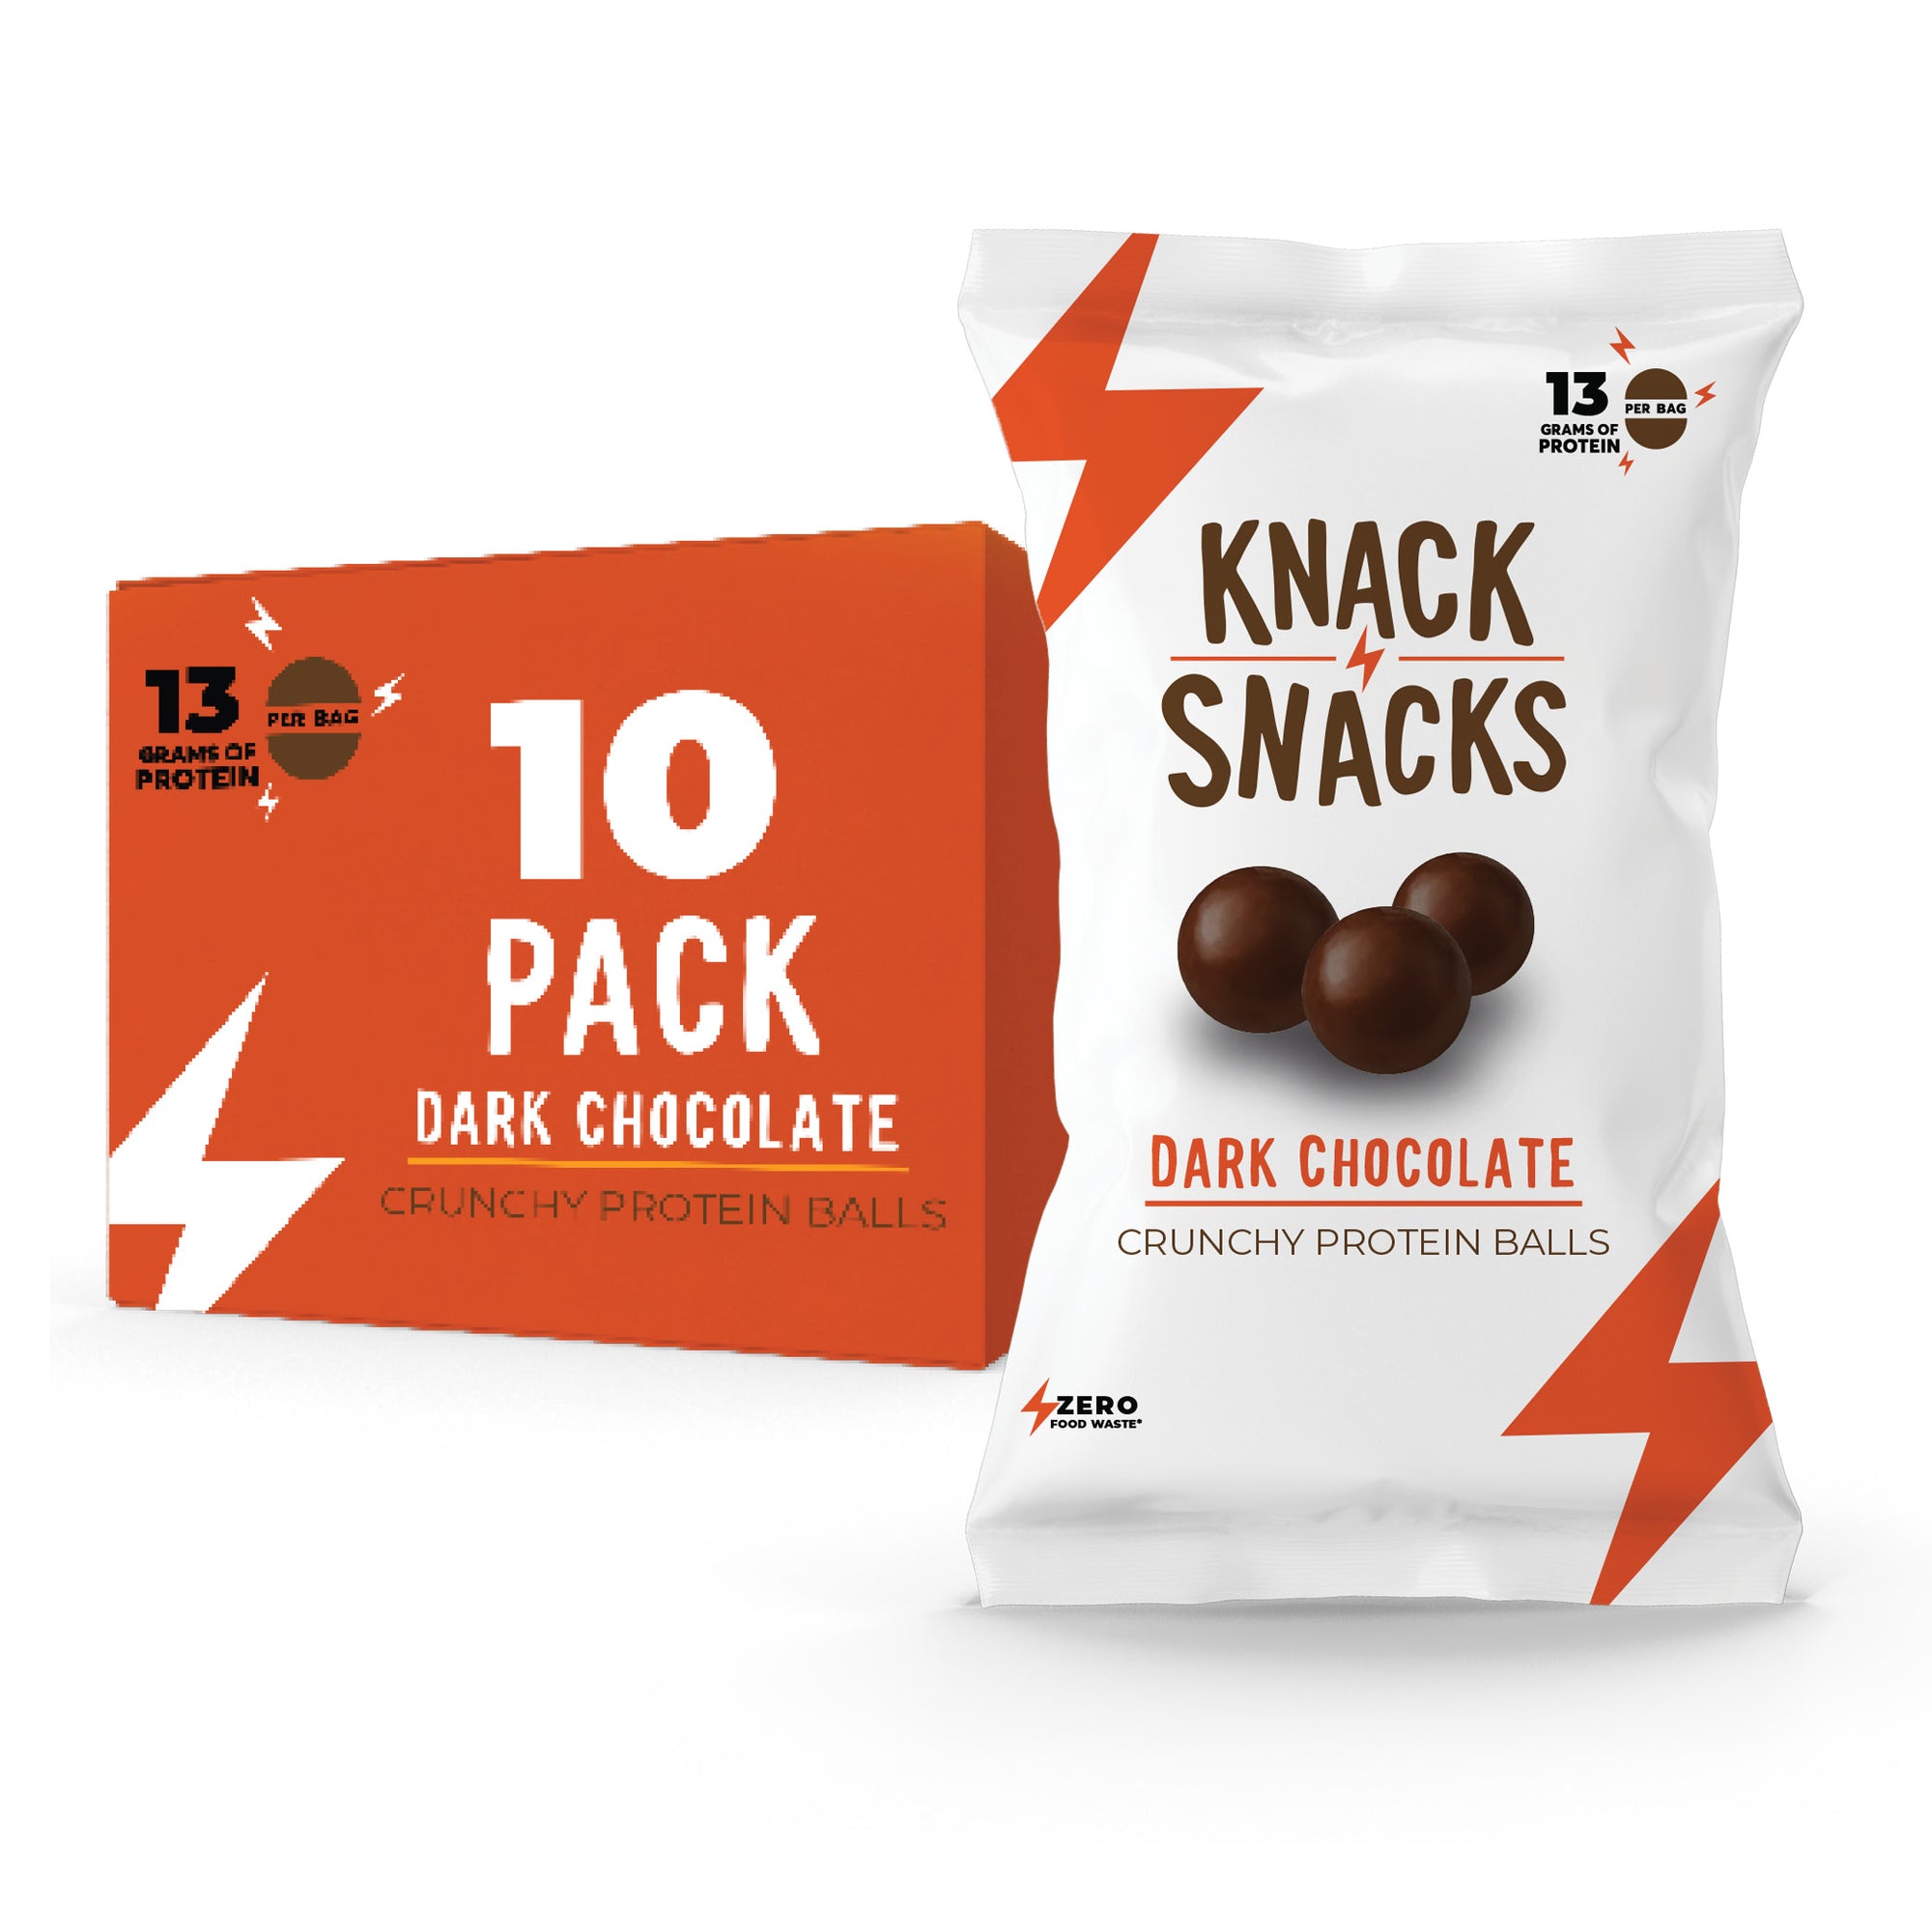 Dark Chocolate Crunchy Protein Balls (10 Pack)